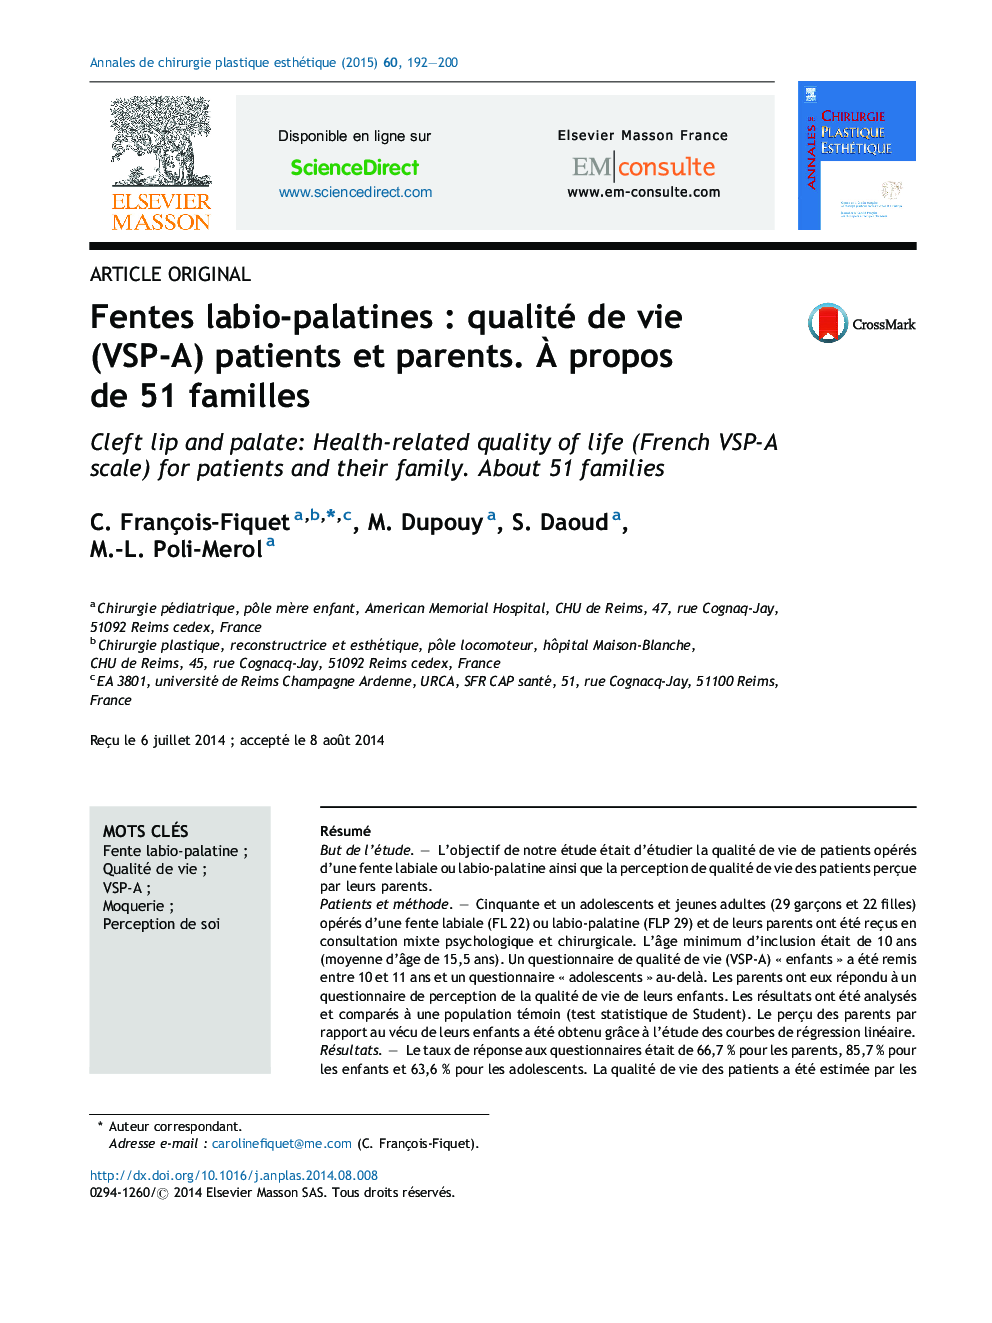 Fentes labio-palatines : qualité de vie (VSP-A) patients et parents. À propos de 51 familles